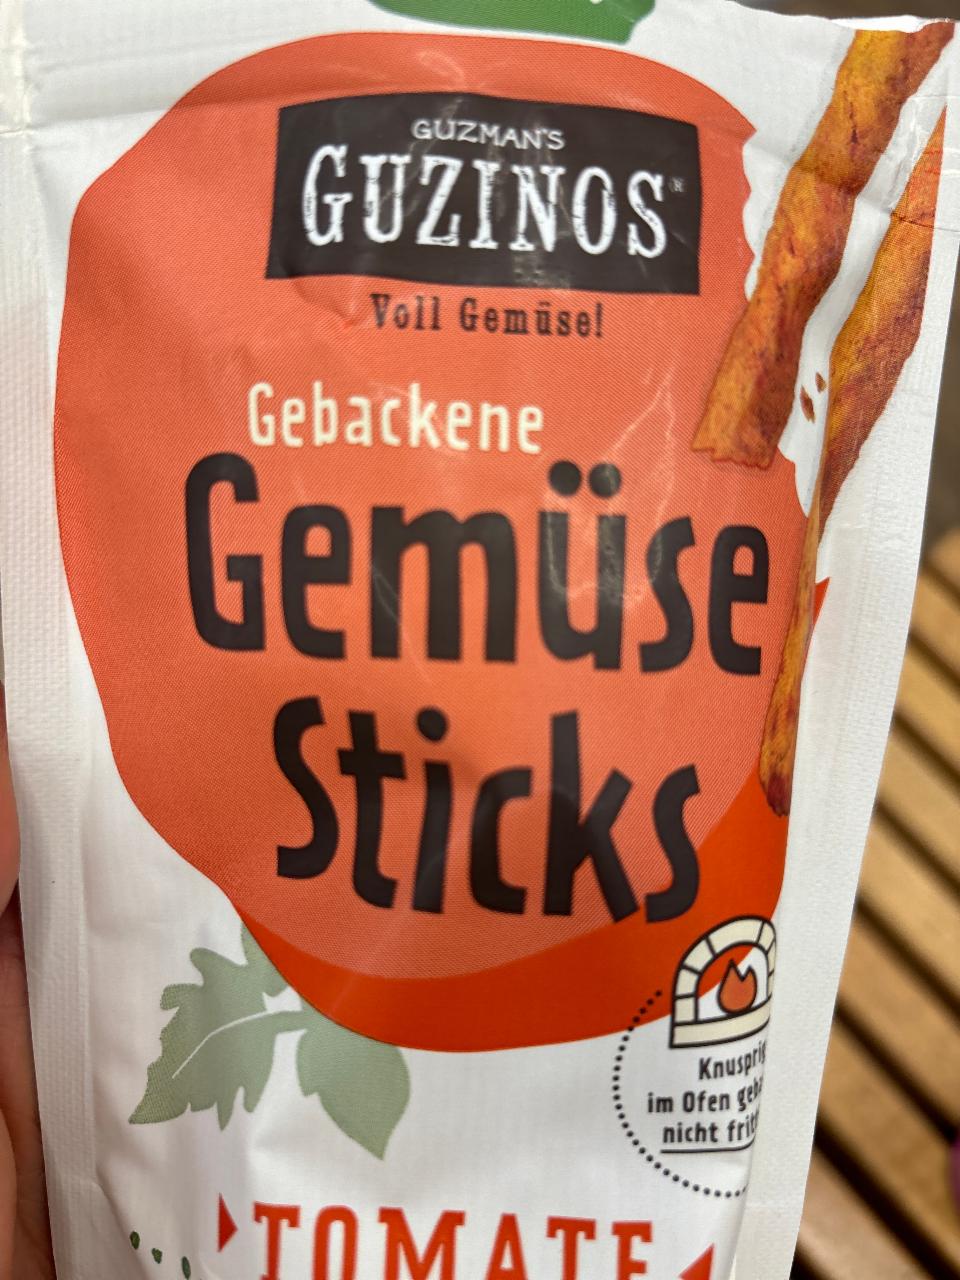 Fotografie - Gebackene Gemüse Sticks Tomate Guzmans Guzinos